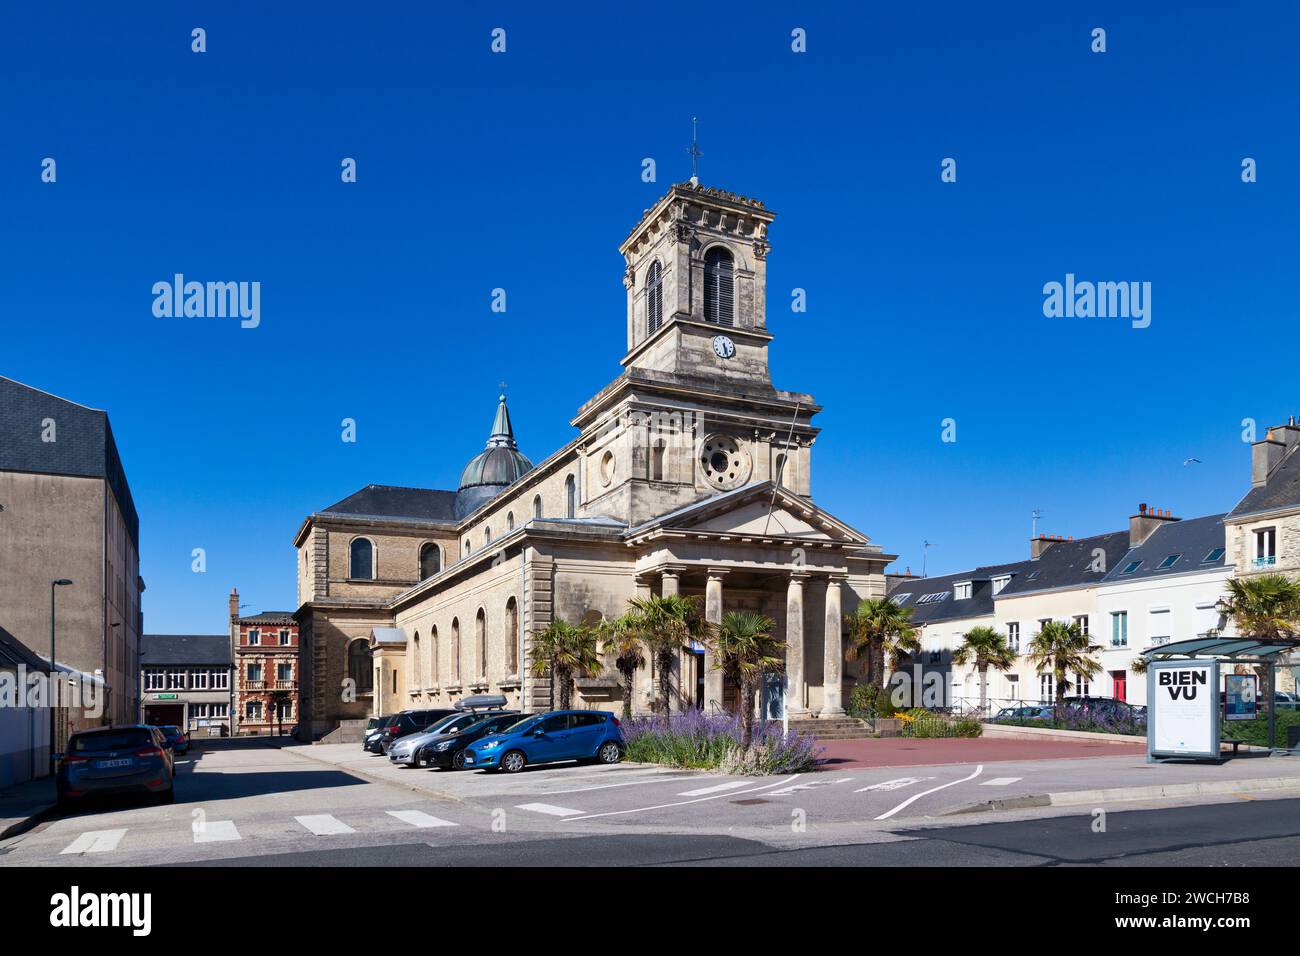 Cherbourg-en-Cotentin, Frankreich - 06. August 2020: Die Kirche Saint-Clément wurde im Stadtteil Val-de-Saire, gegenüber dem Krankenhaus Pasteur, gebaut Stockfoto